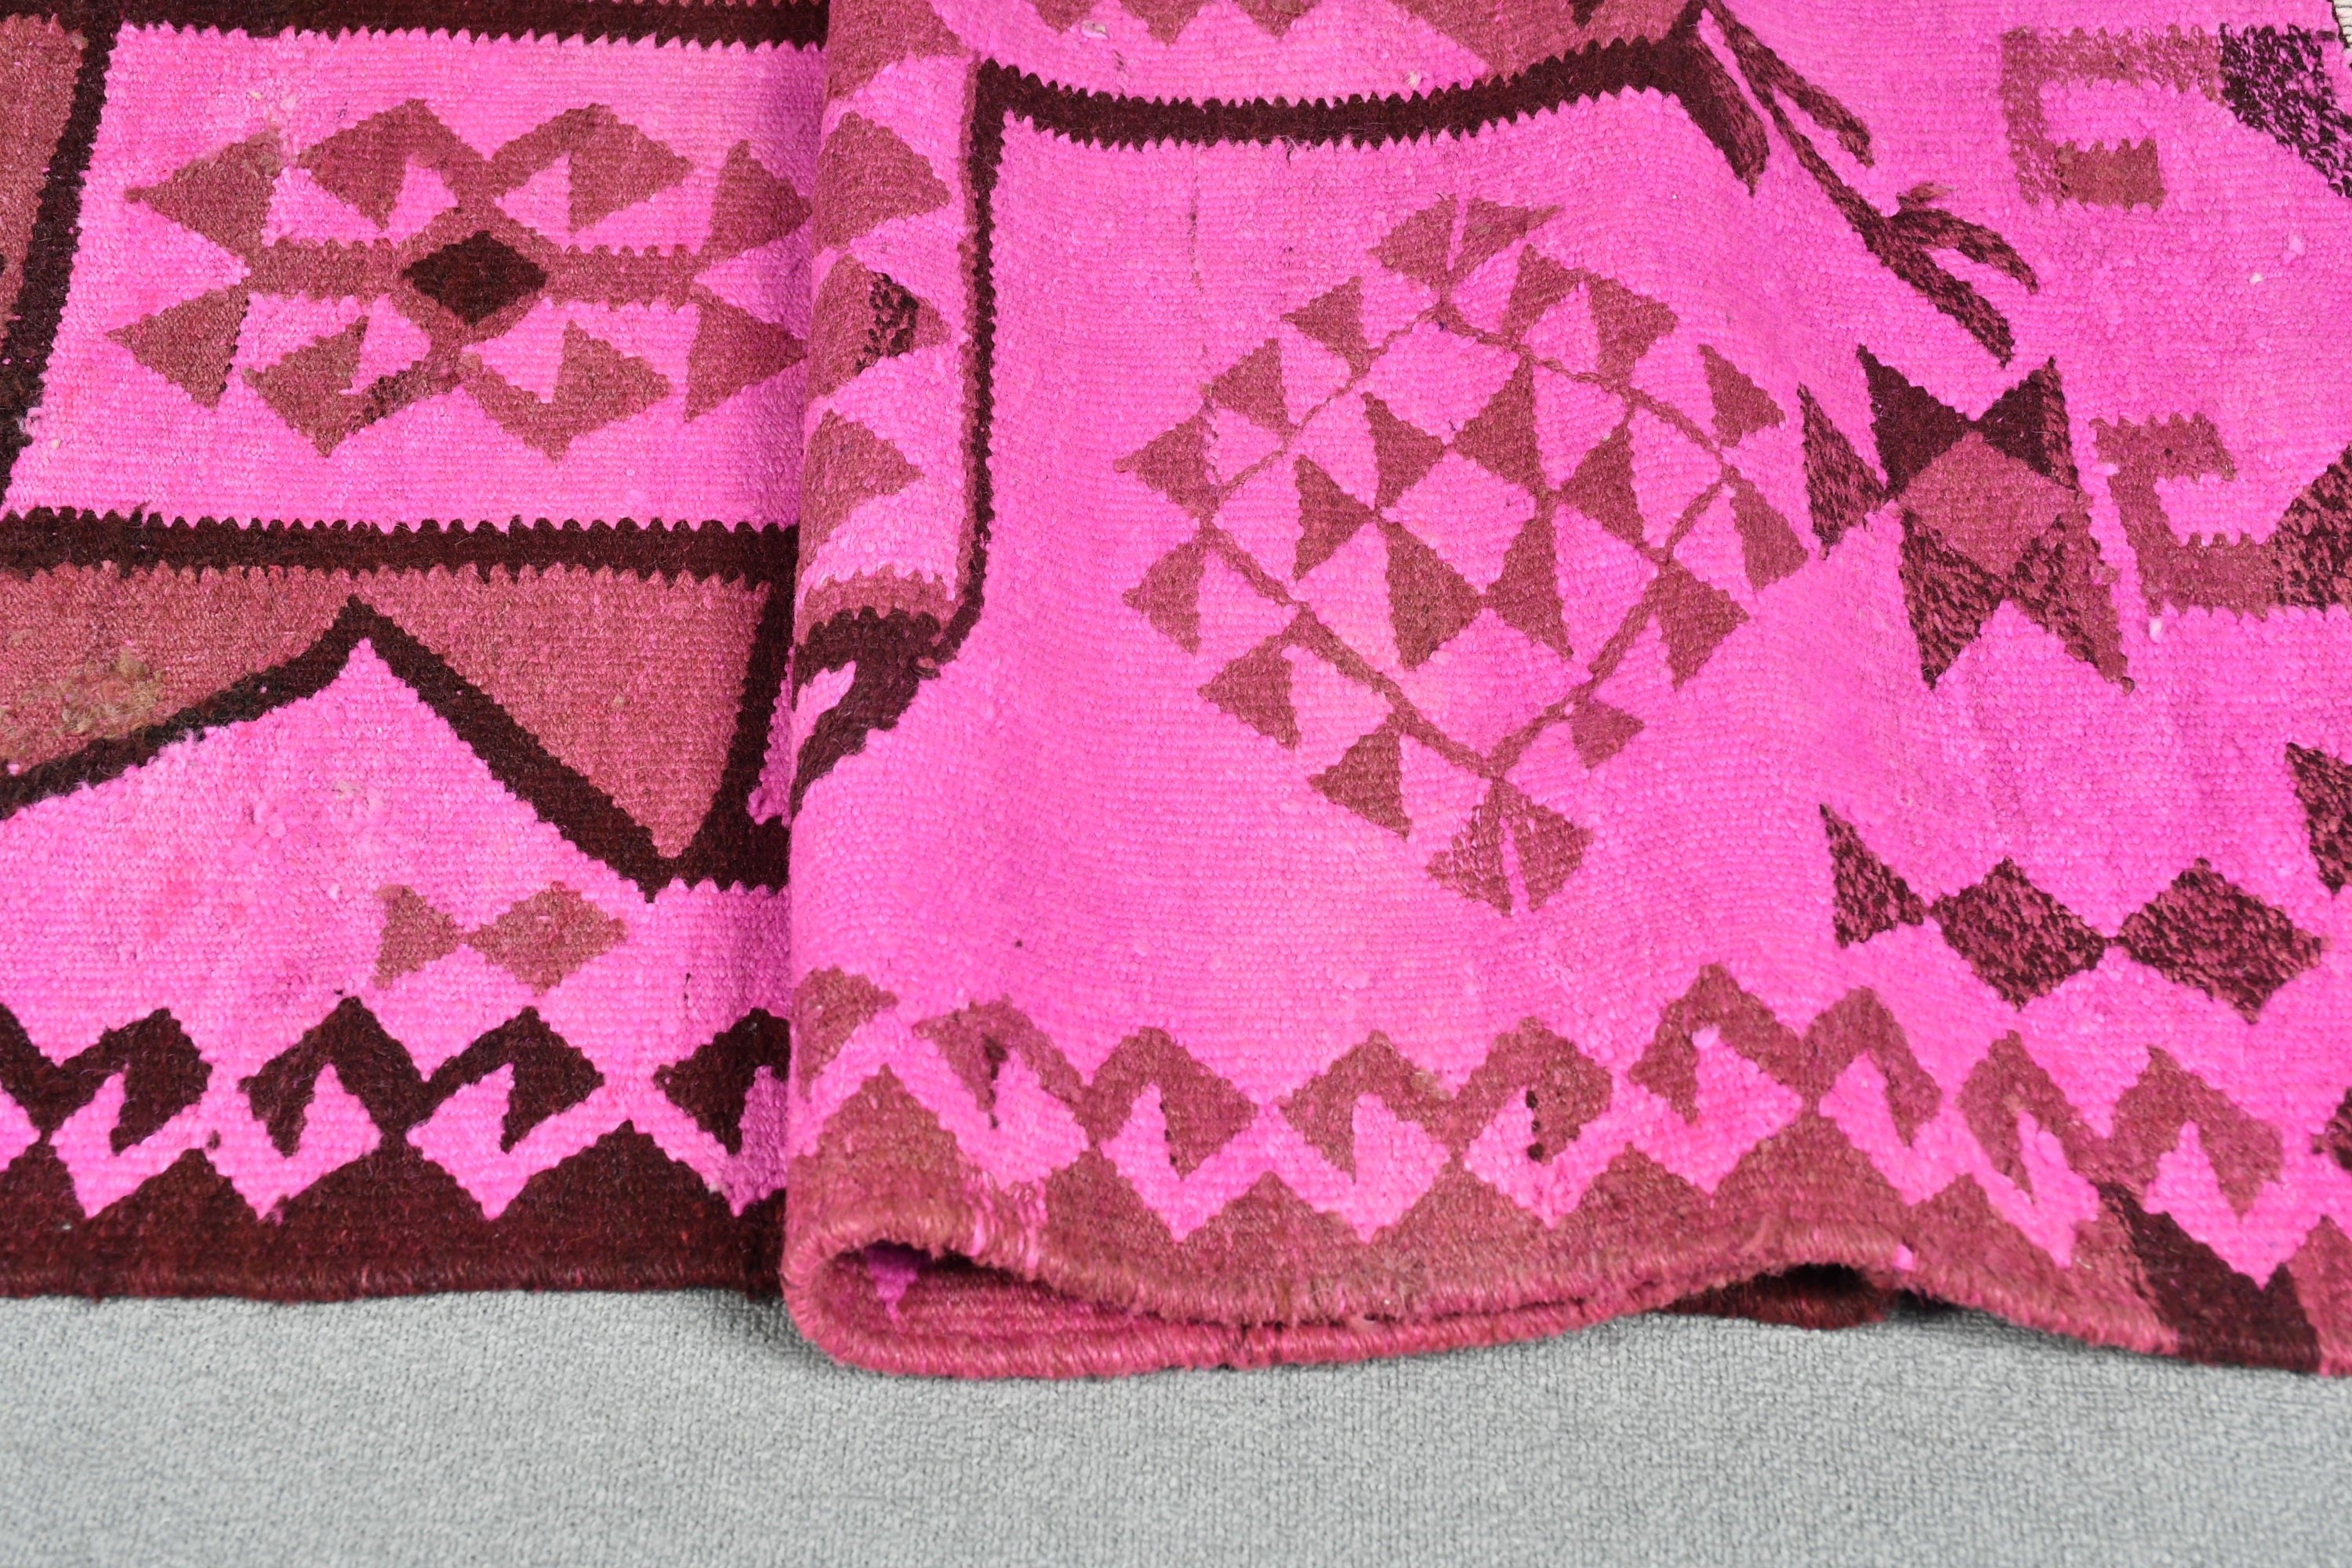 Pink Floor Rugs, Wool Rug, Cool Rugs, Art Rugs, Corridor Rug, Turkish Rug, 3.2x9.7 ft Runner Rug, Stair Rug, Rugs for Hallway, Vintage Rug